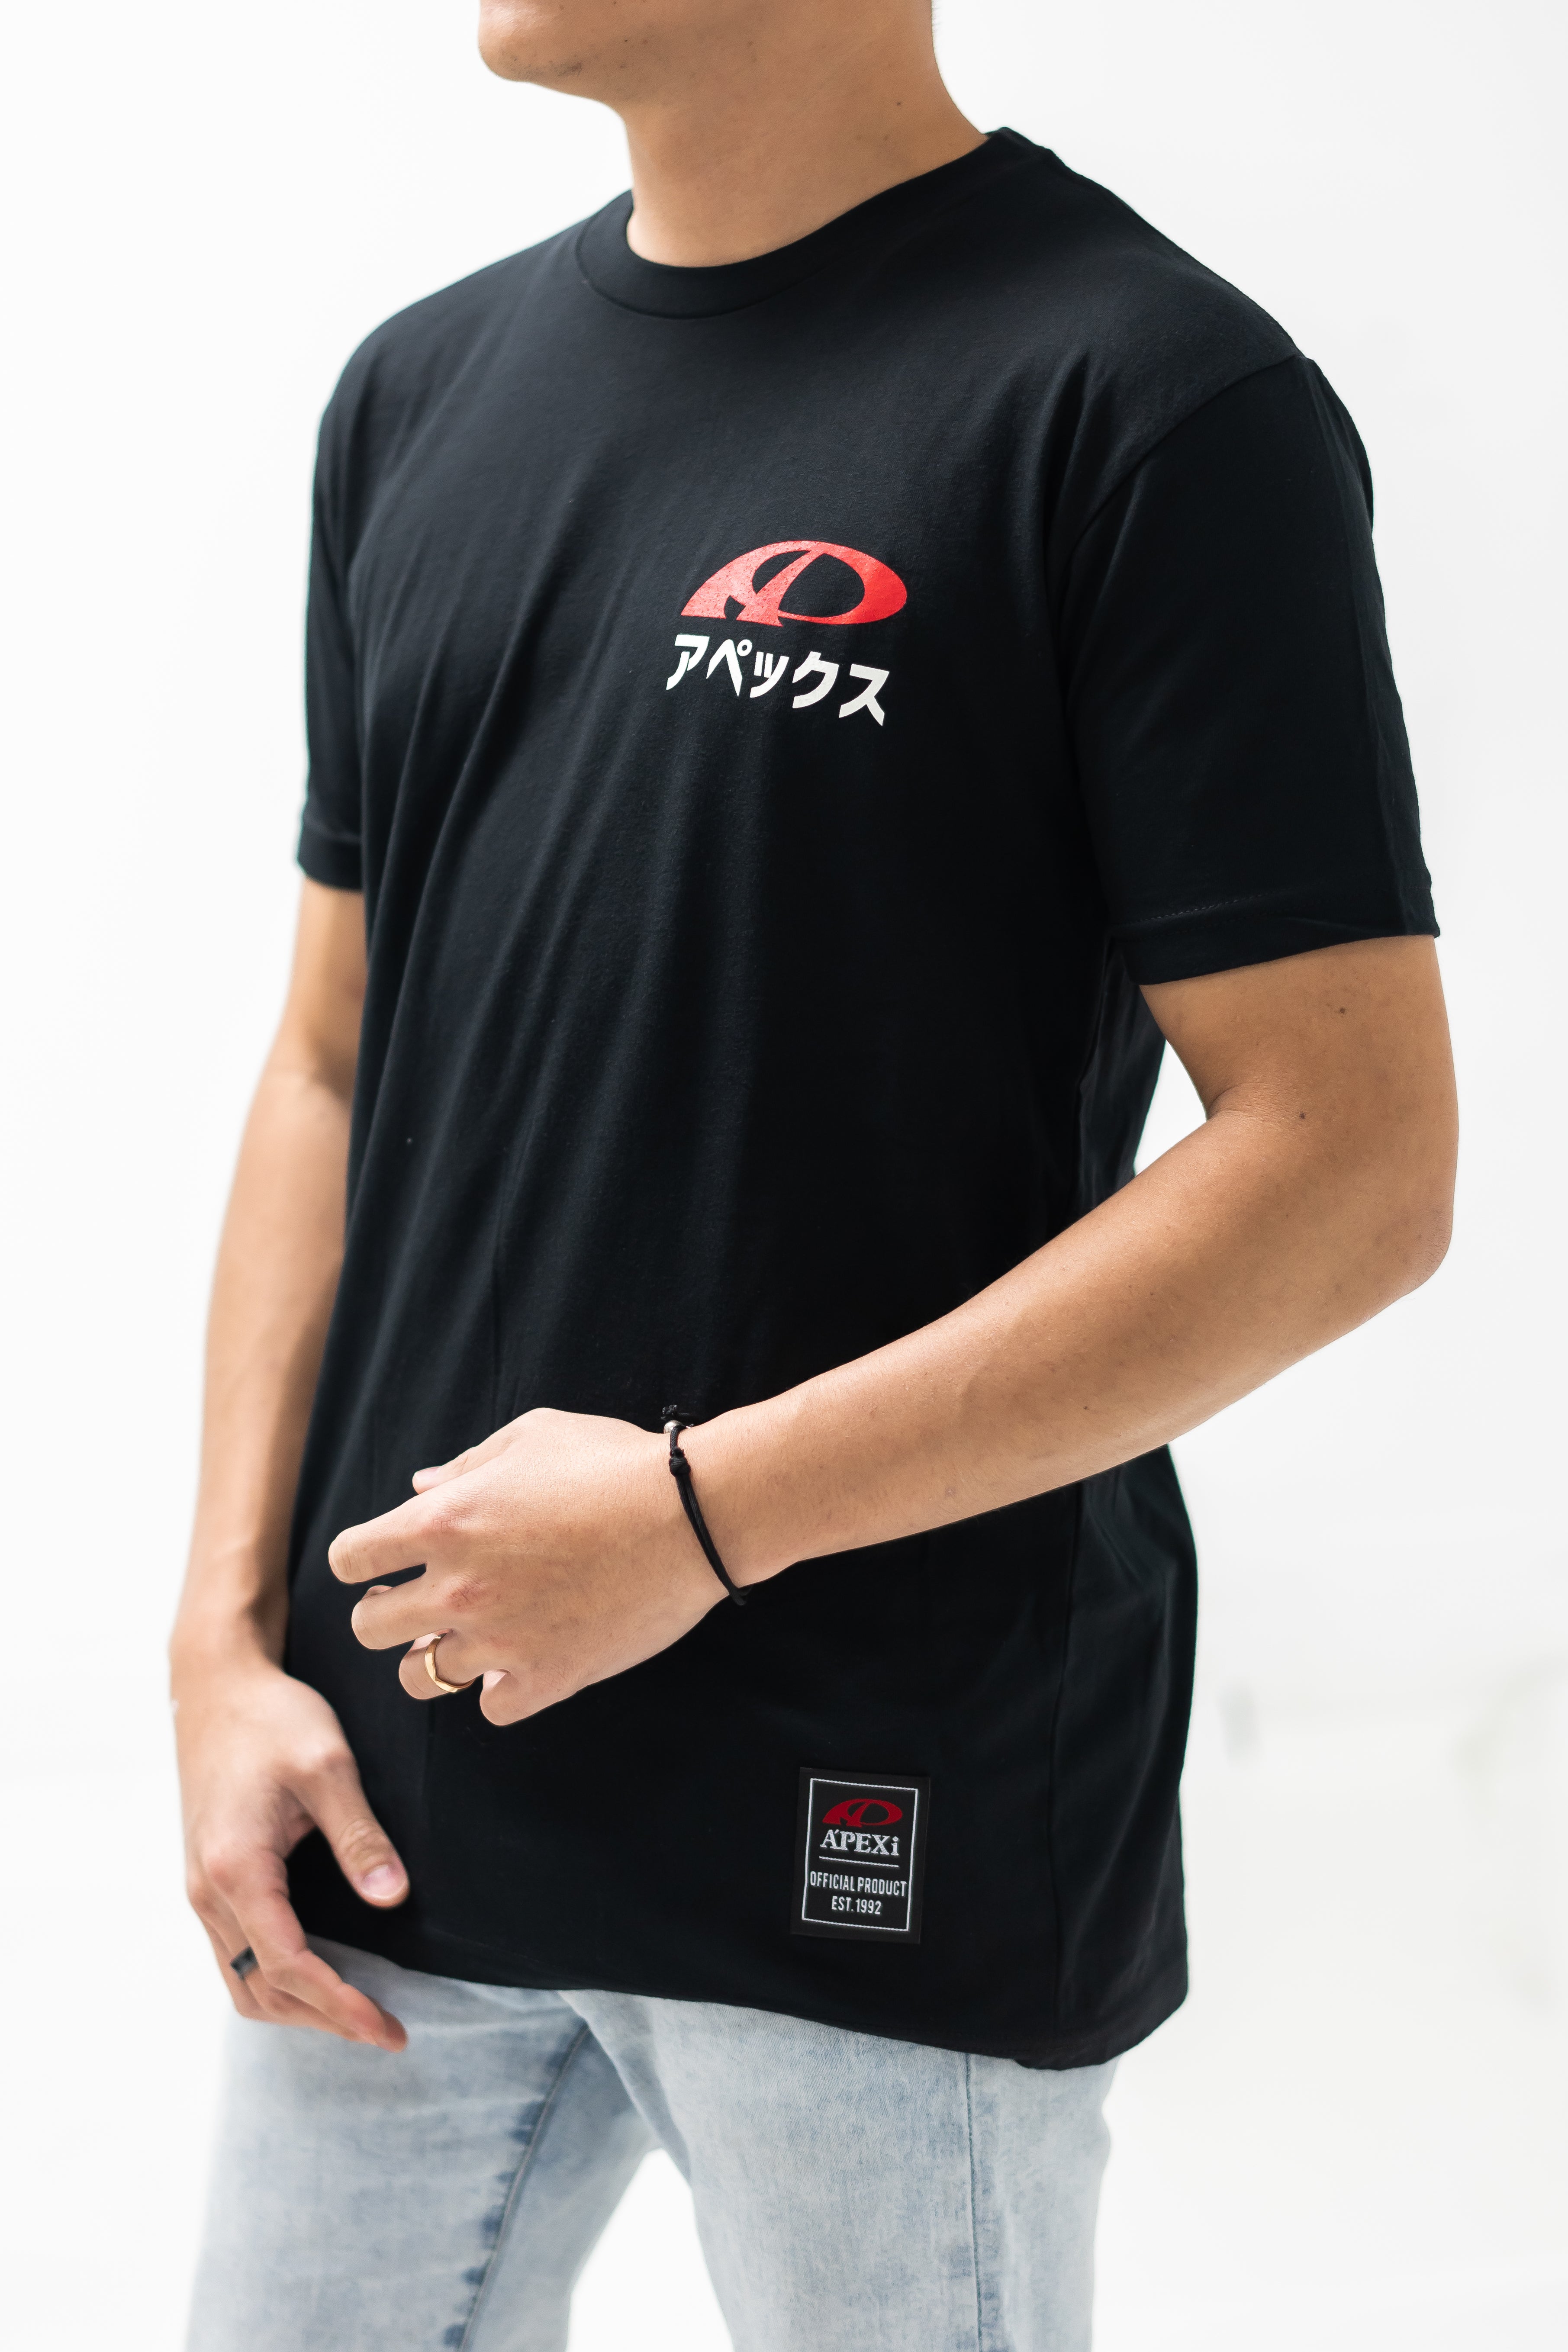 A'PEXi - A'PEXi Mt. Fuji T-shirt [Ver. 2.0]